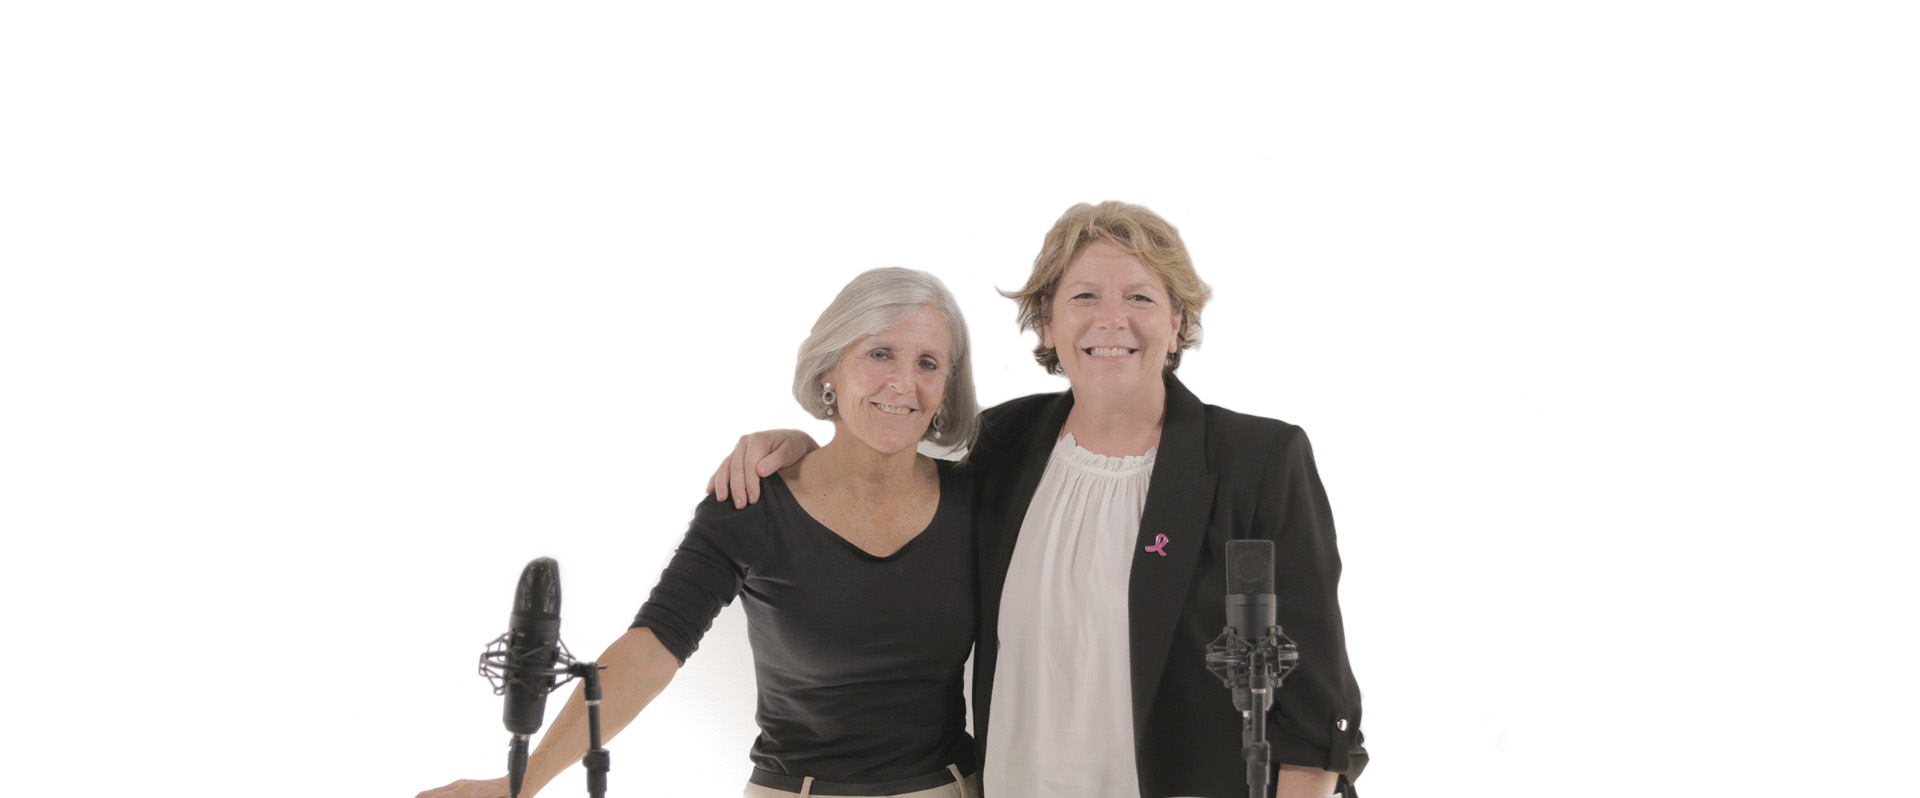 Ana Cox: “Acoger y acompañar a mujeres con cáncer ha sido un regalo”